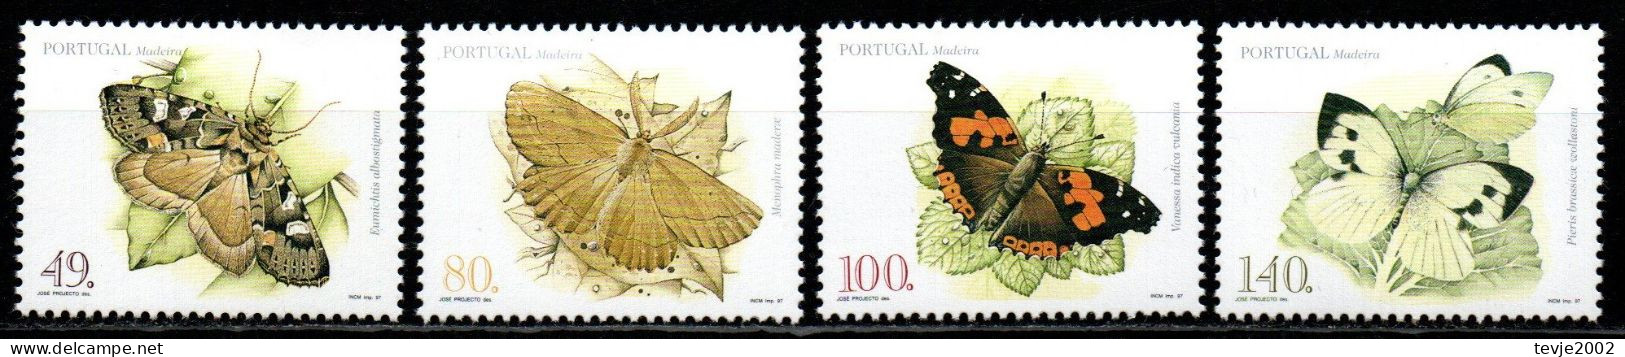 Portugal Madeira 1997 - Mi.Nr. 187 - 190 A - Postfrisch MNH - Tiere Animals Schmetterlinge Butterflies - Papillons